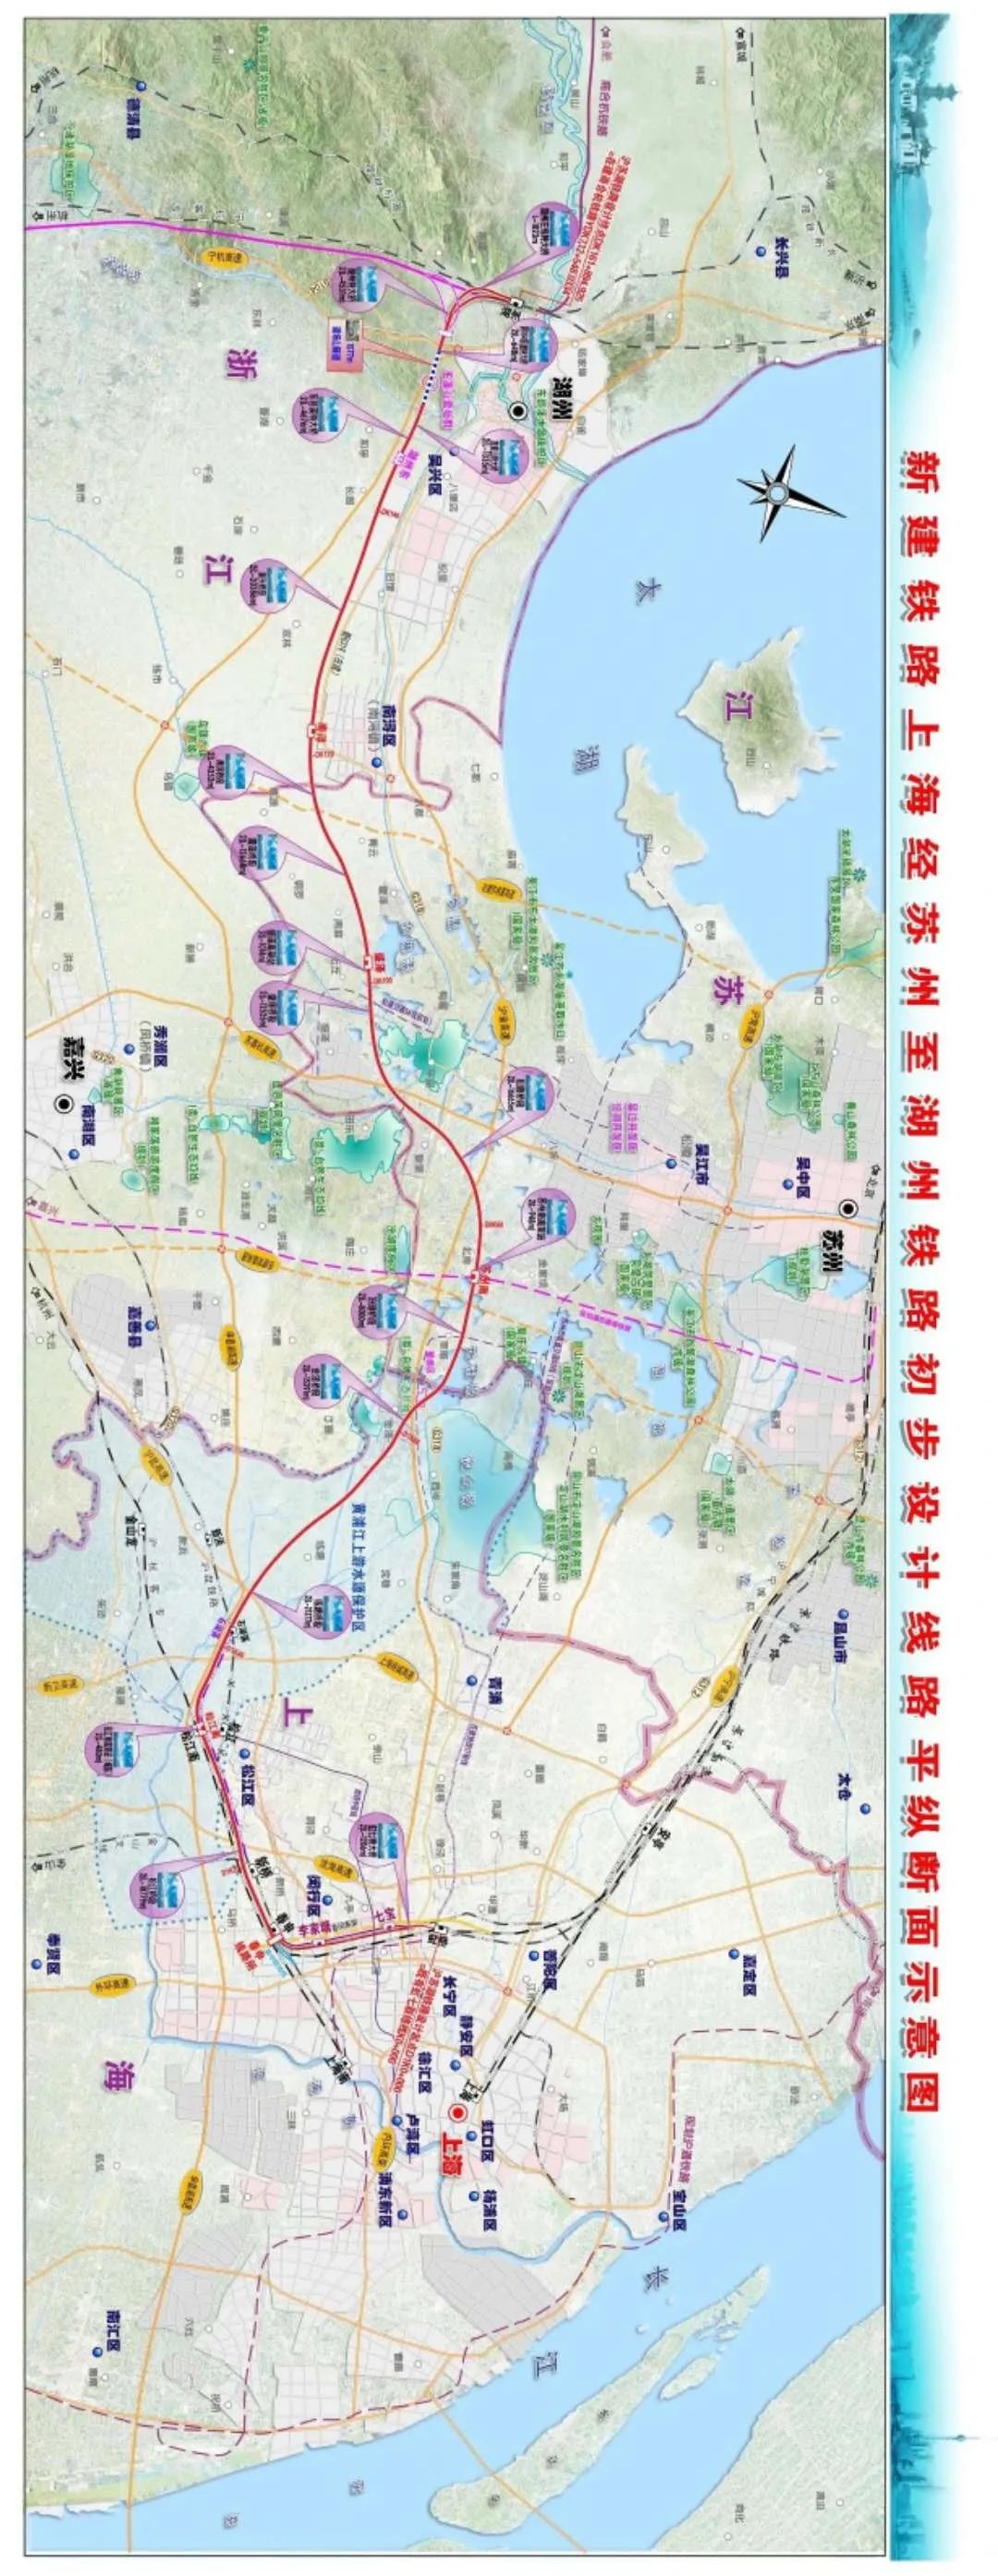 沪苏湖铁路江苏段全面施工 通车后吴江至湖州只需15分钟